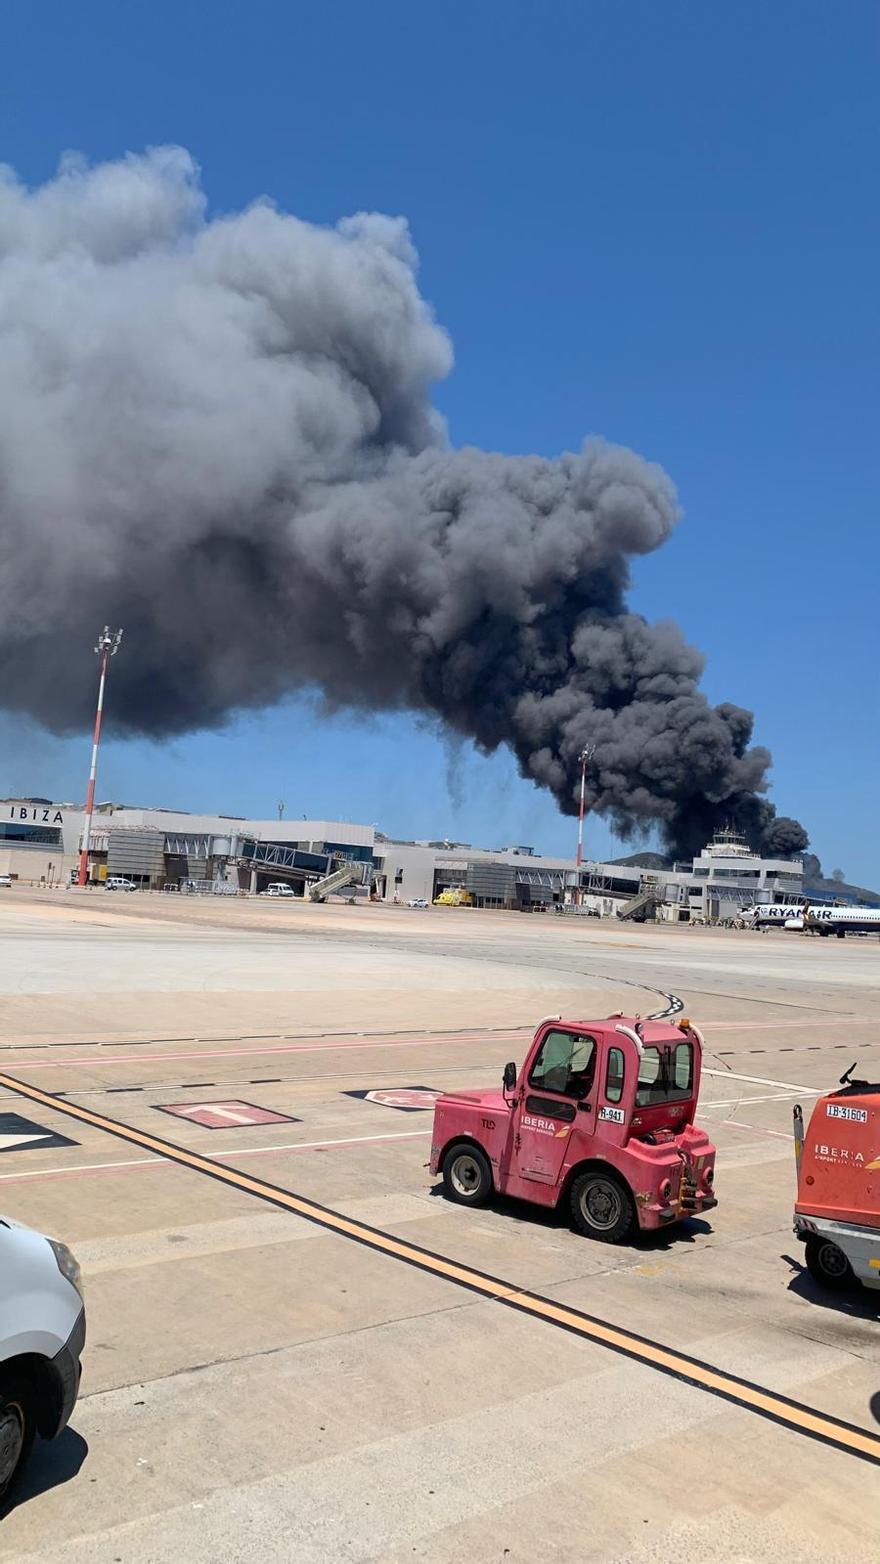 Imágenes del incendio en una nave cercana al aeropuerto de Ibiza.